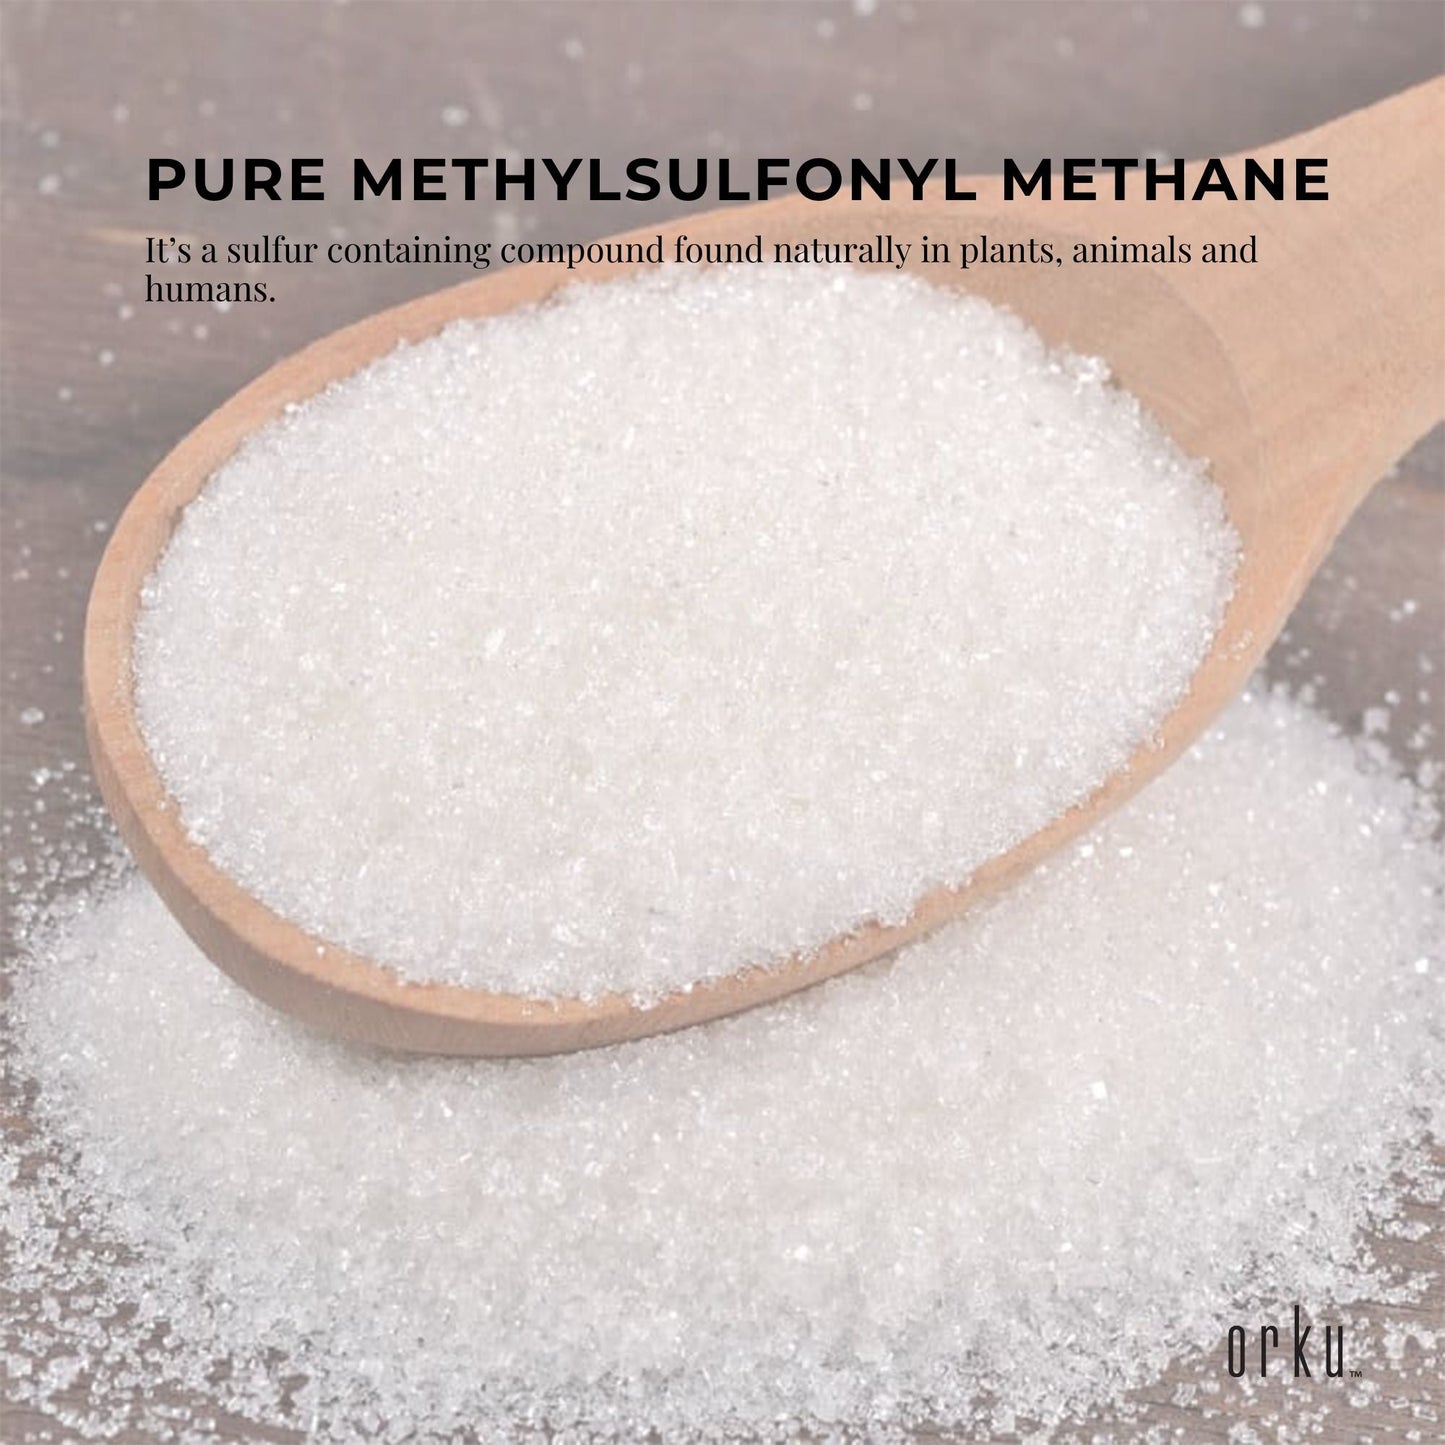 20Kg MSM Powder or Crystals Tub - 99% Pure Methylsulfonylmethane Dimethyl Sulfone